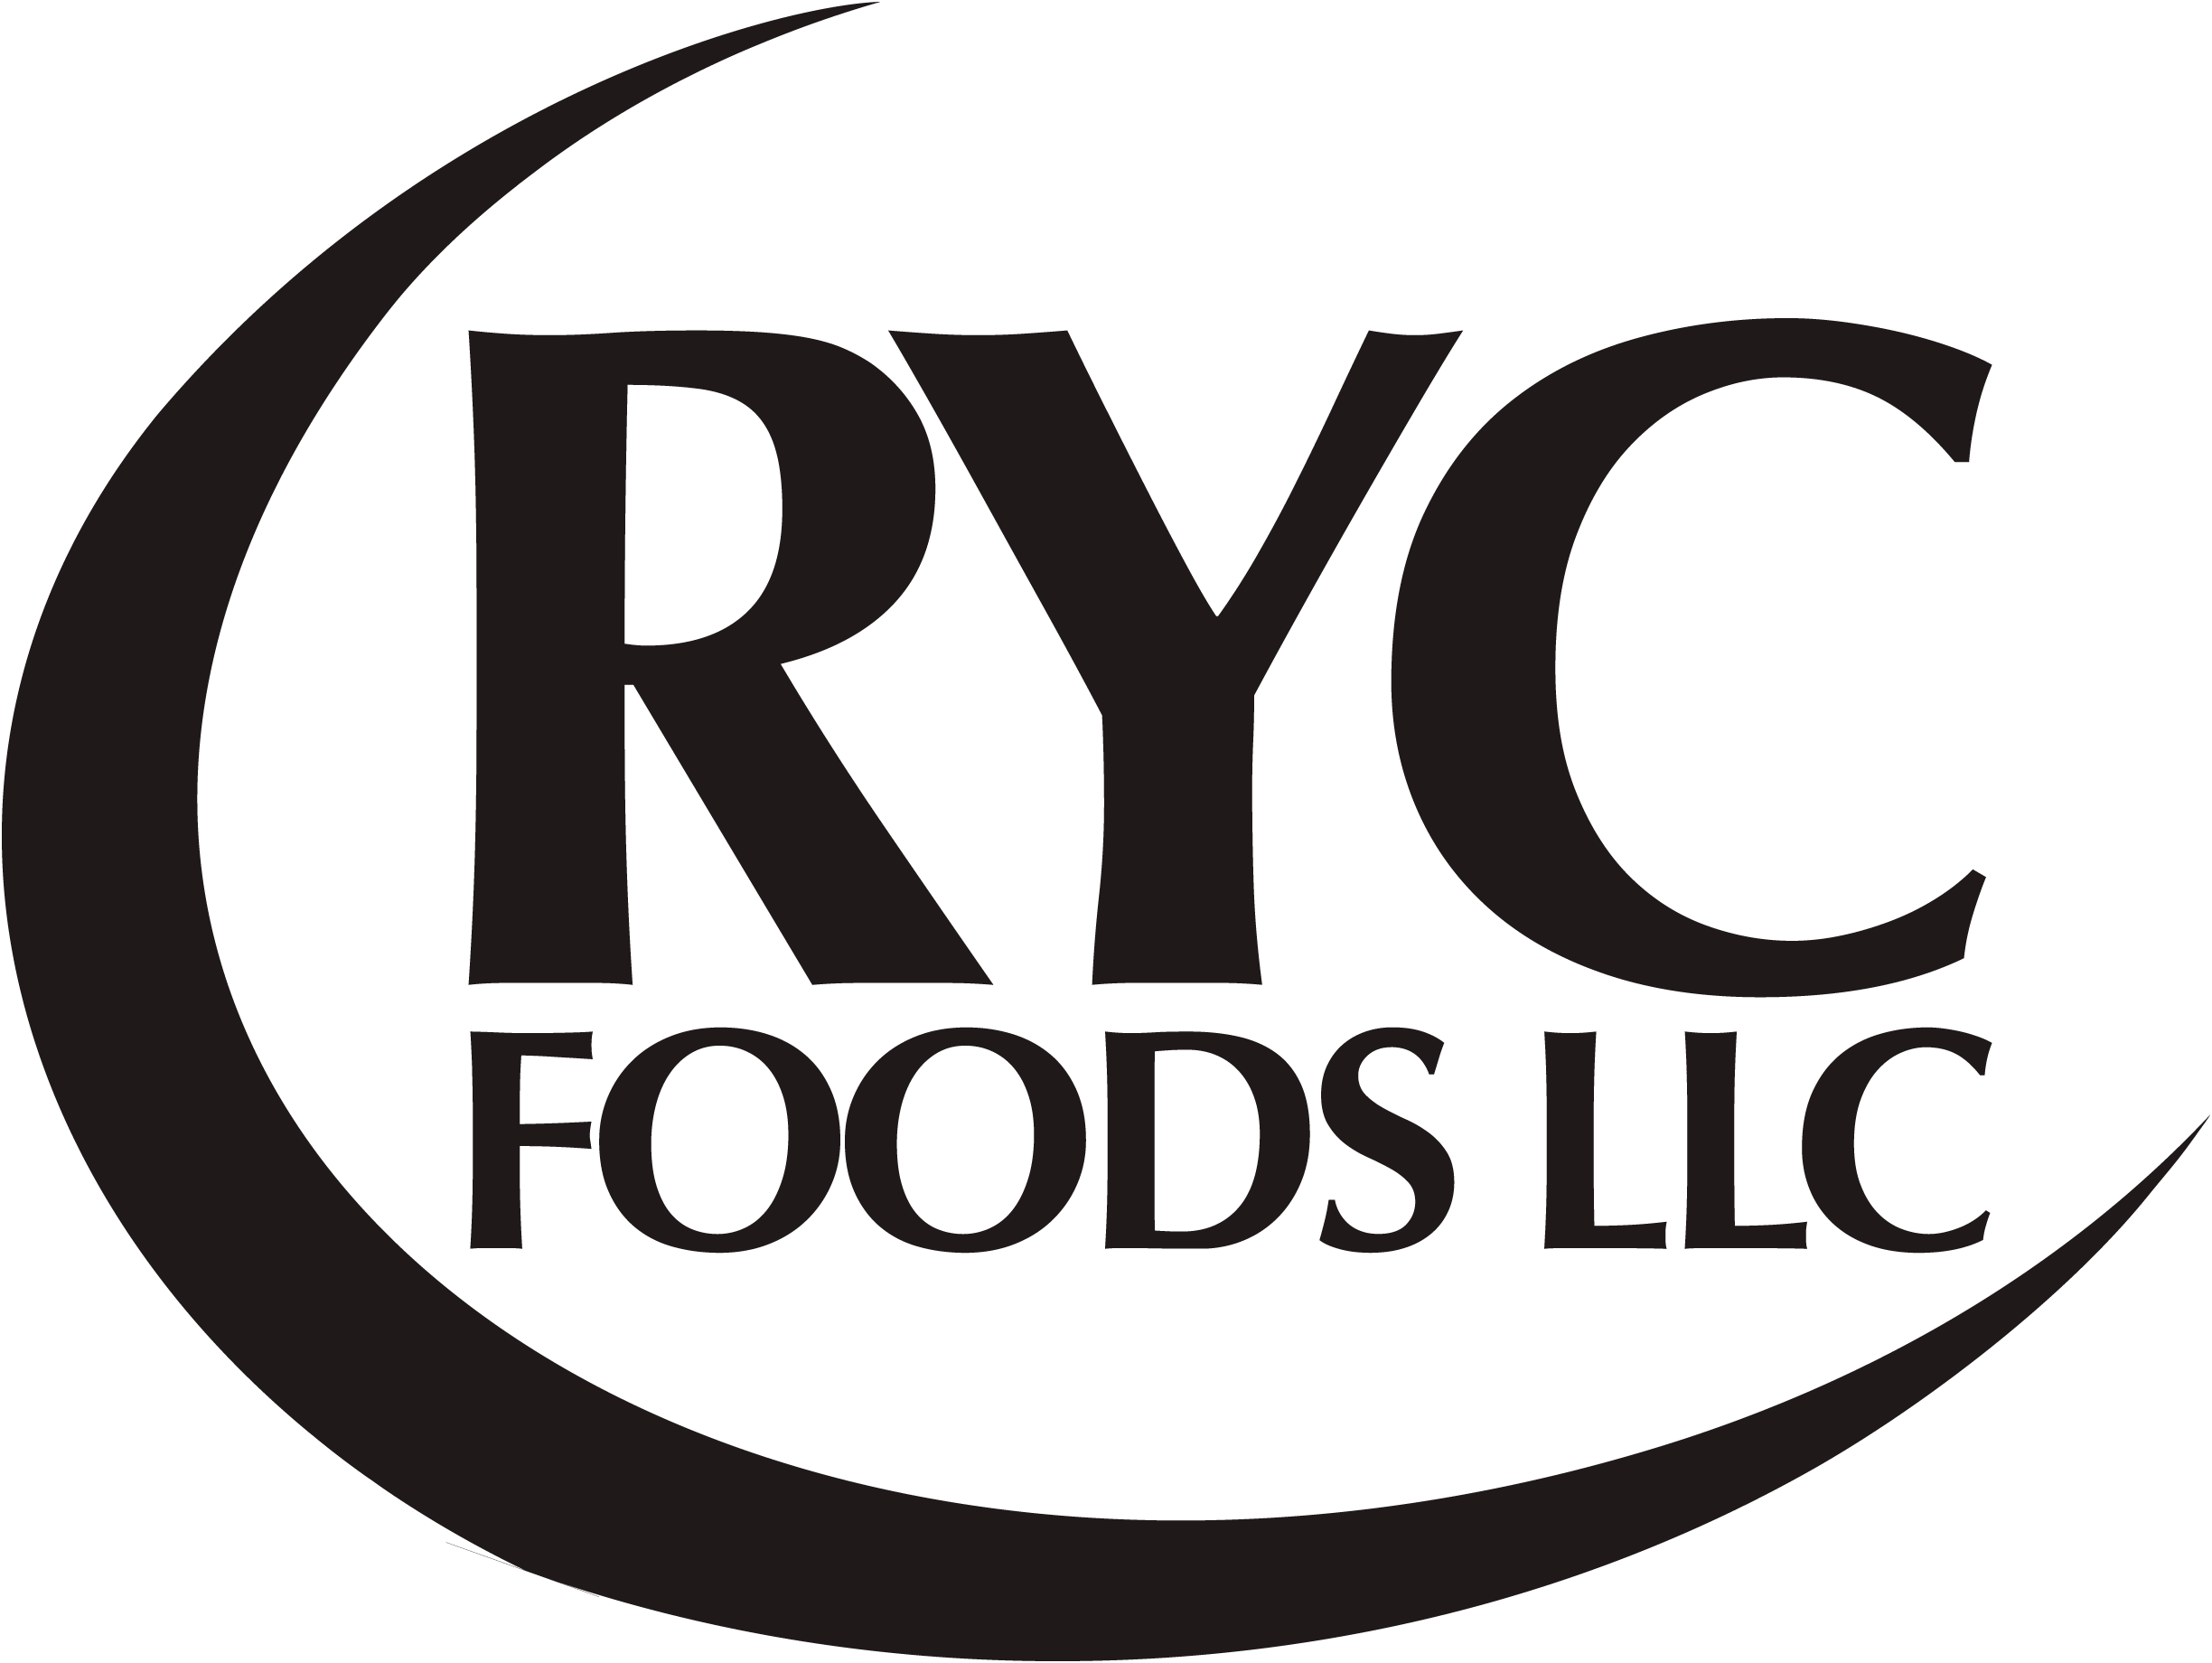  'RYC FOODS' 